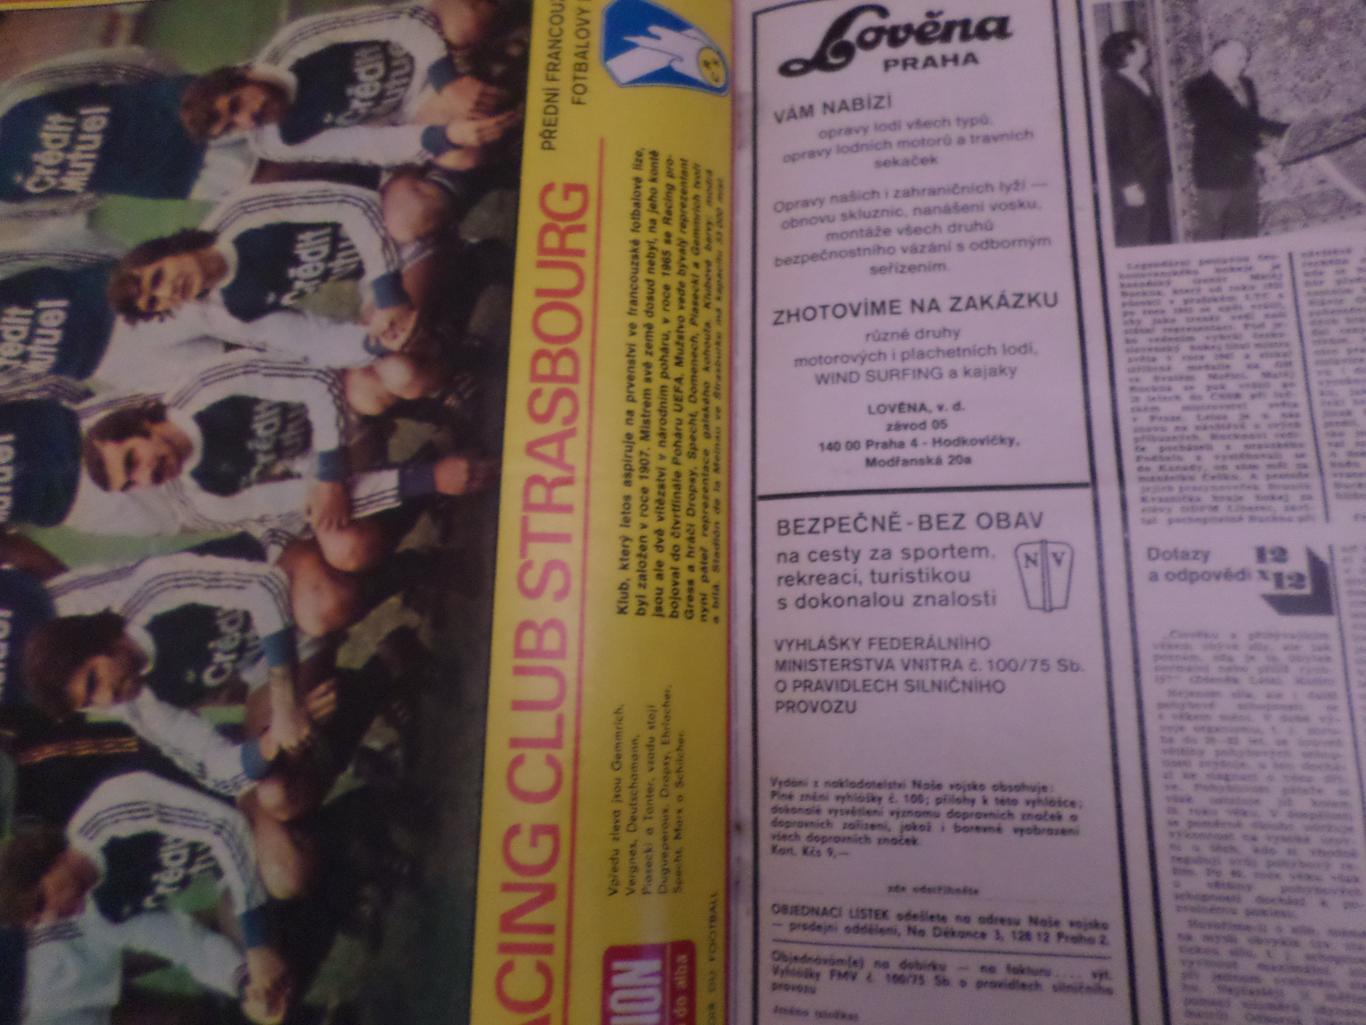 журнал Стадион Чехословакия № 19 1979 г постер Страсбург 1